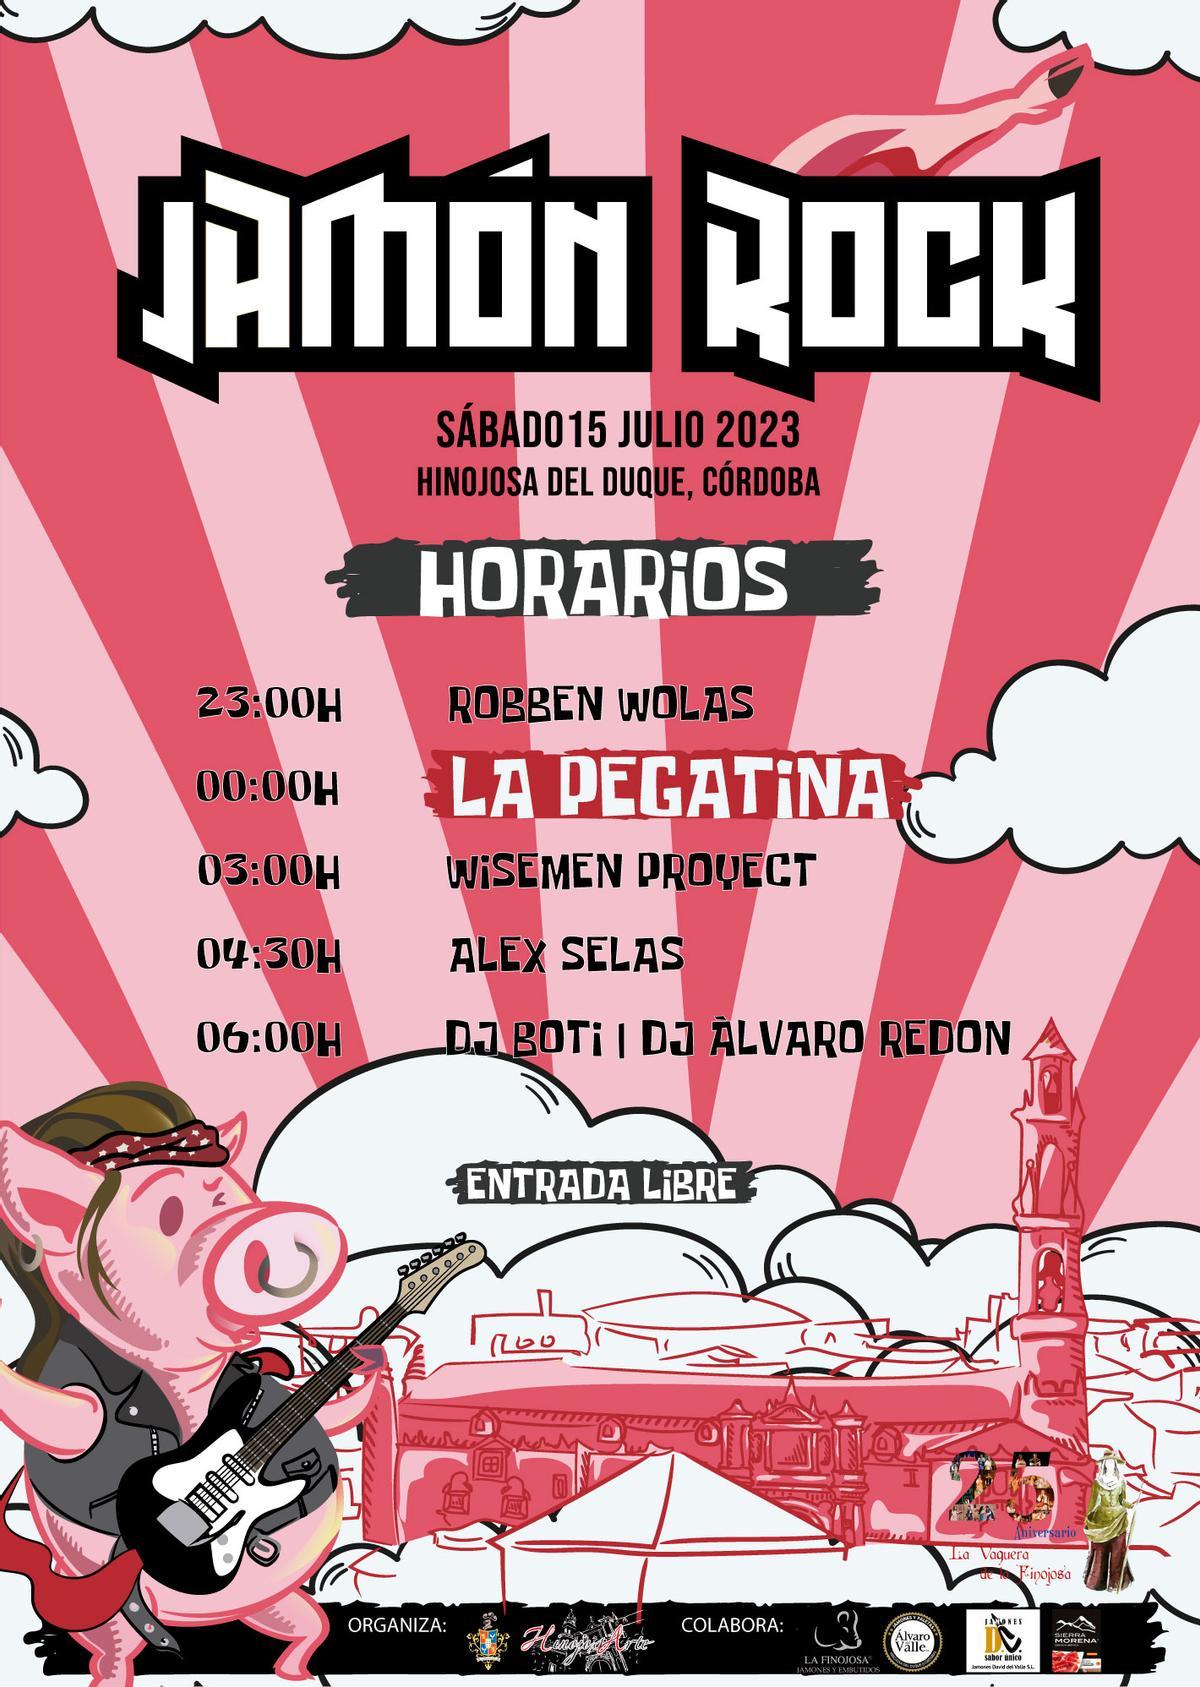 Horarios del Jamón Rock de Hinojosa.